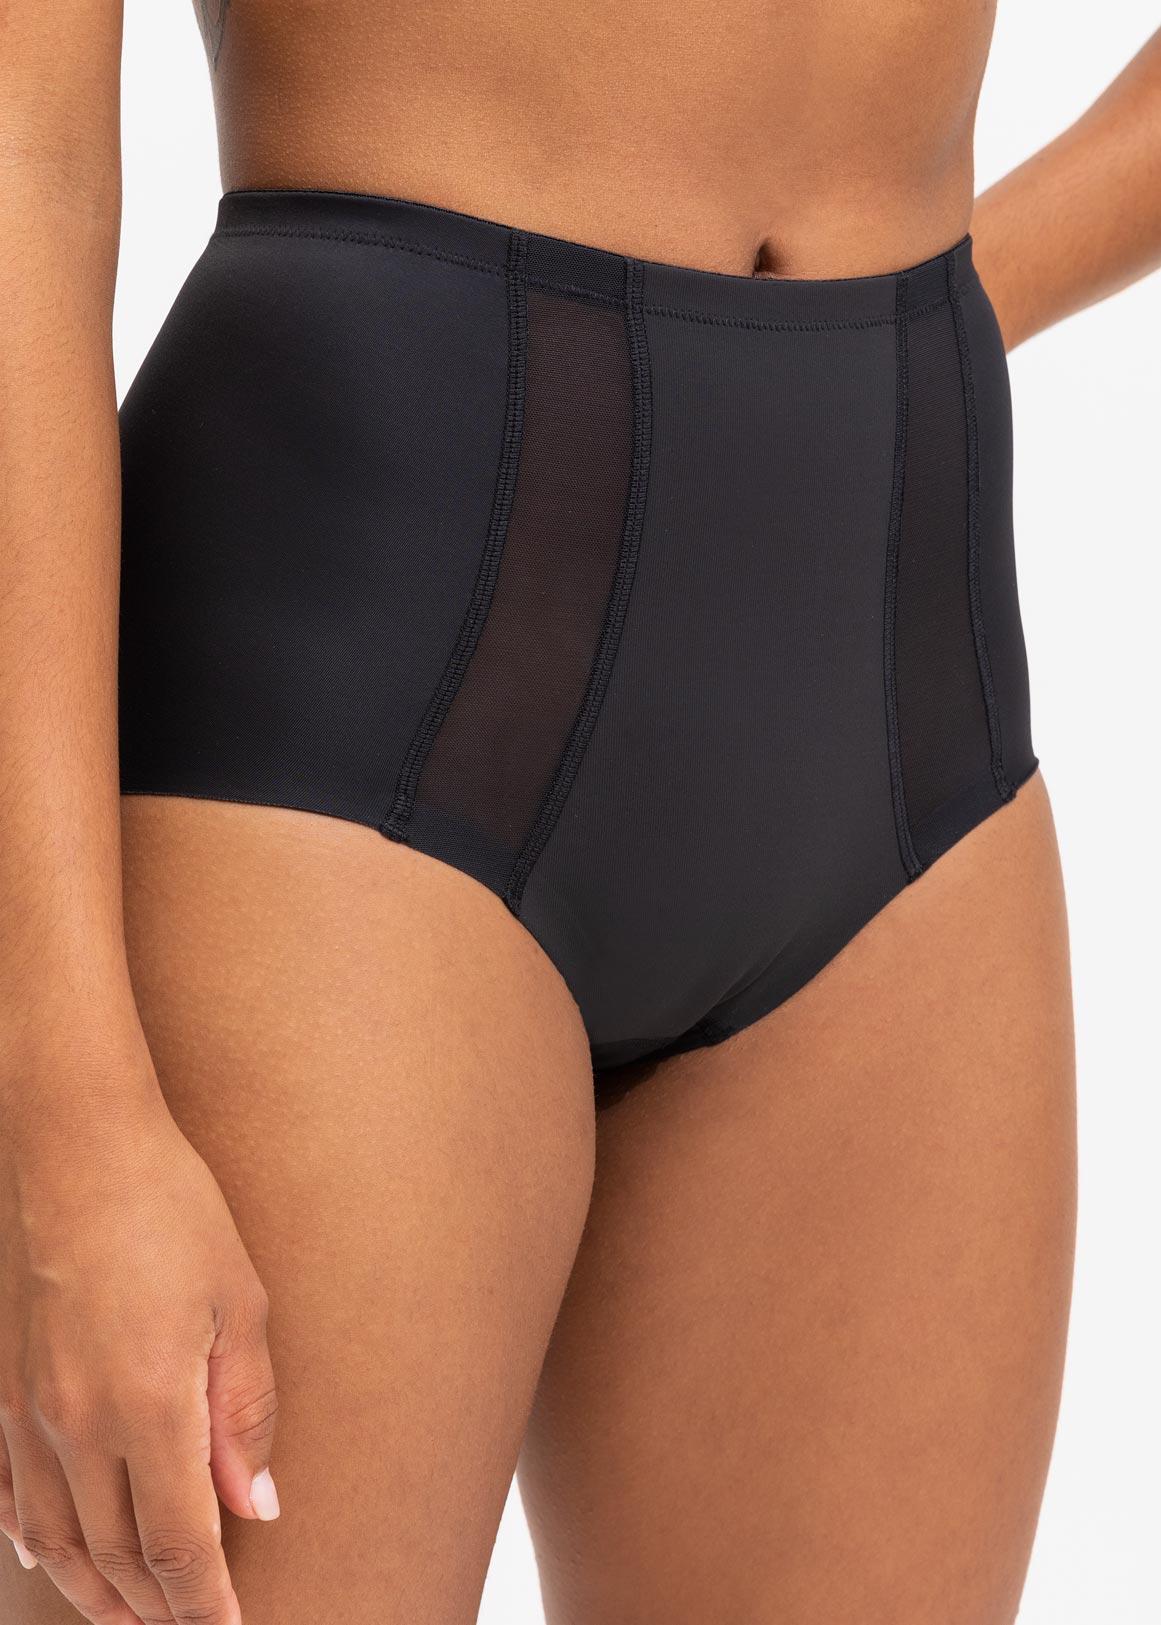 X-shaped bandage tummy control underwear for women high waist